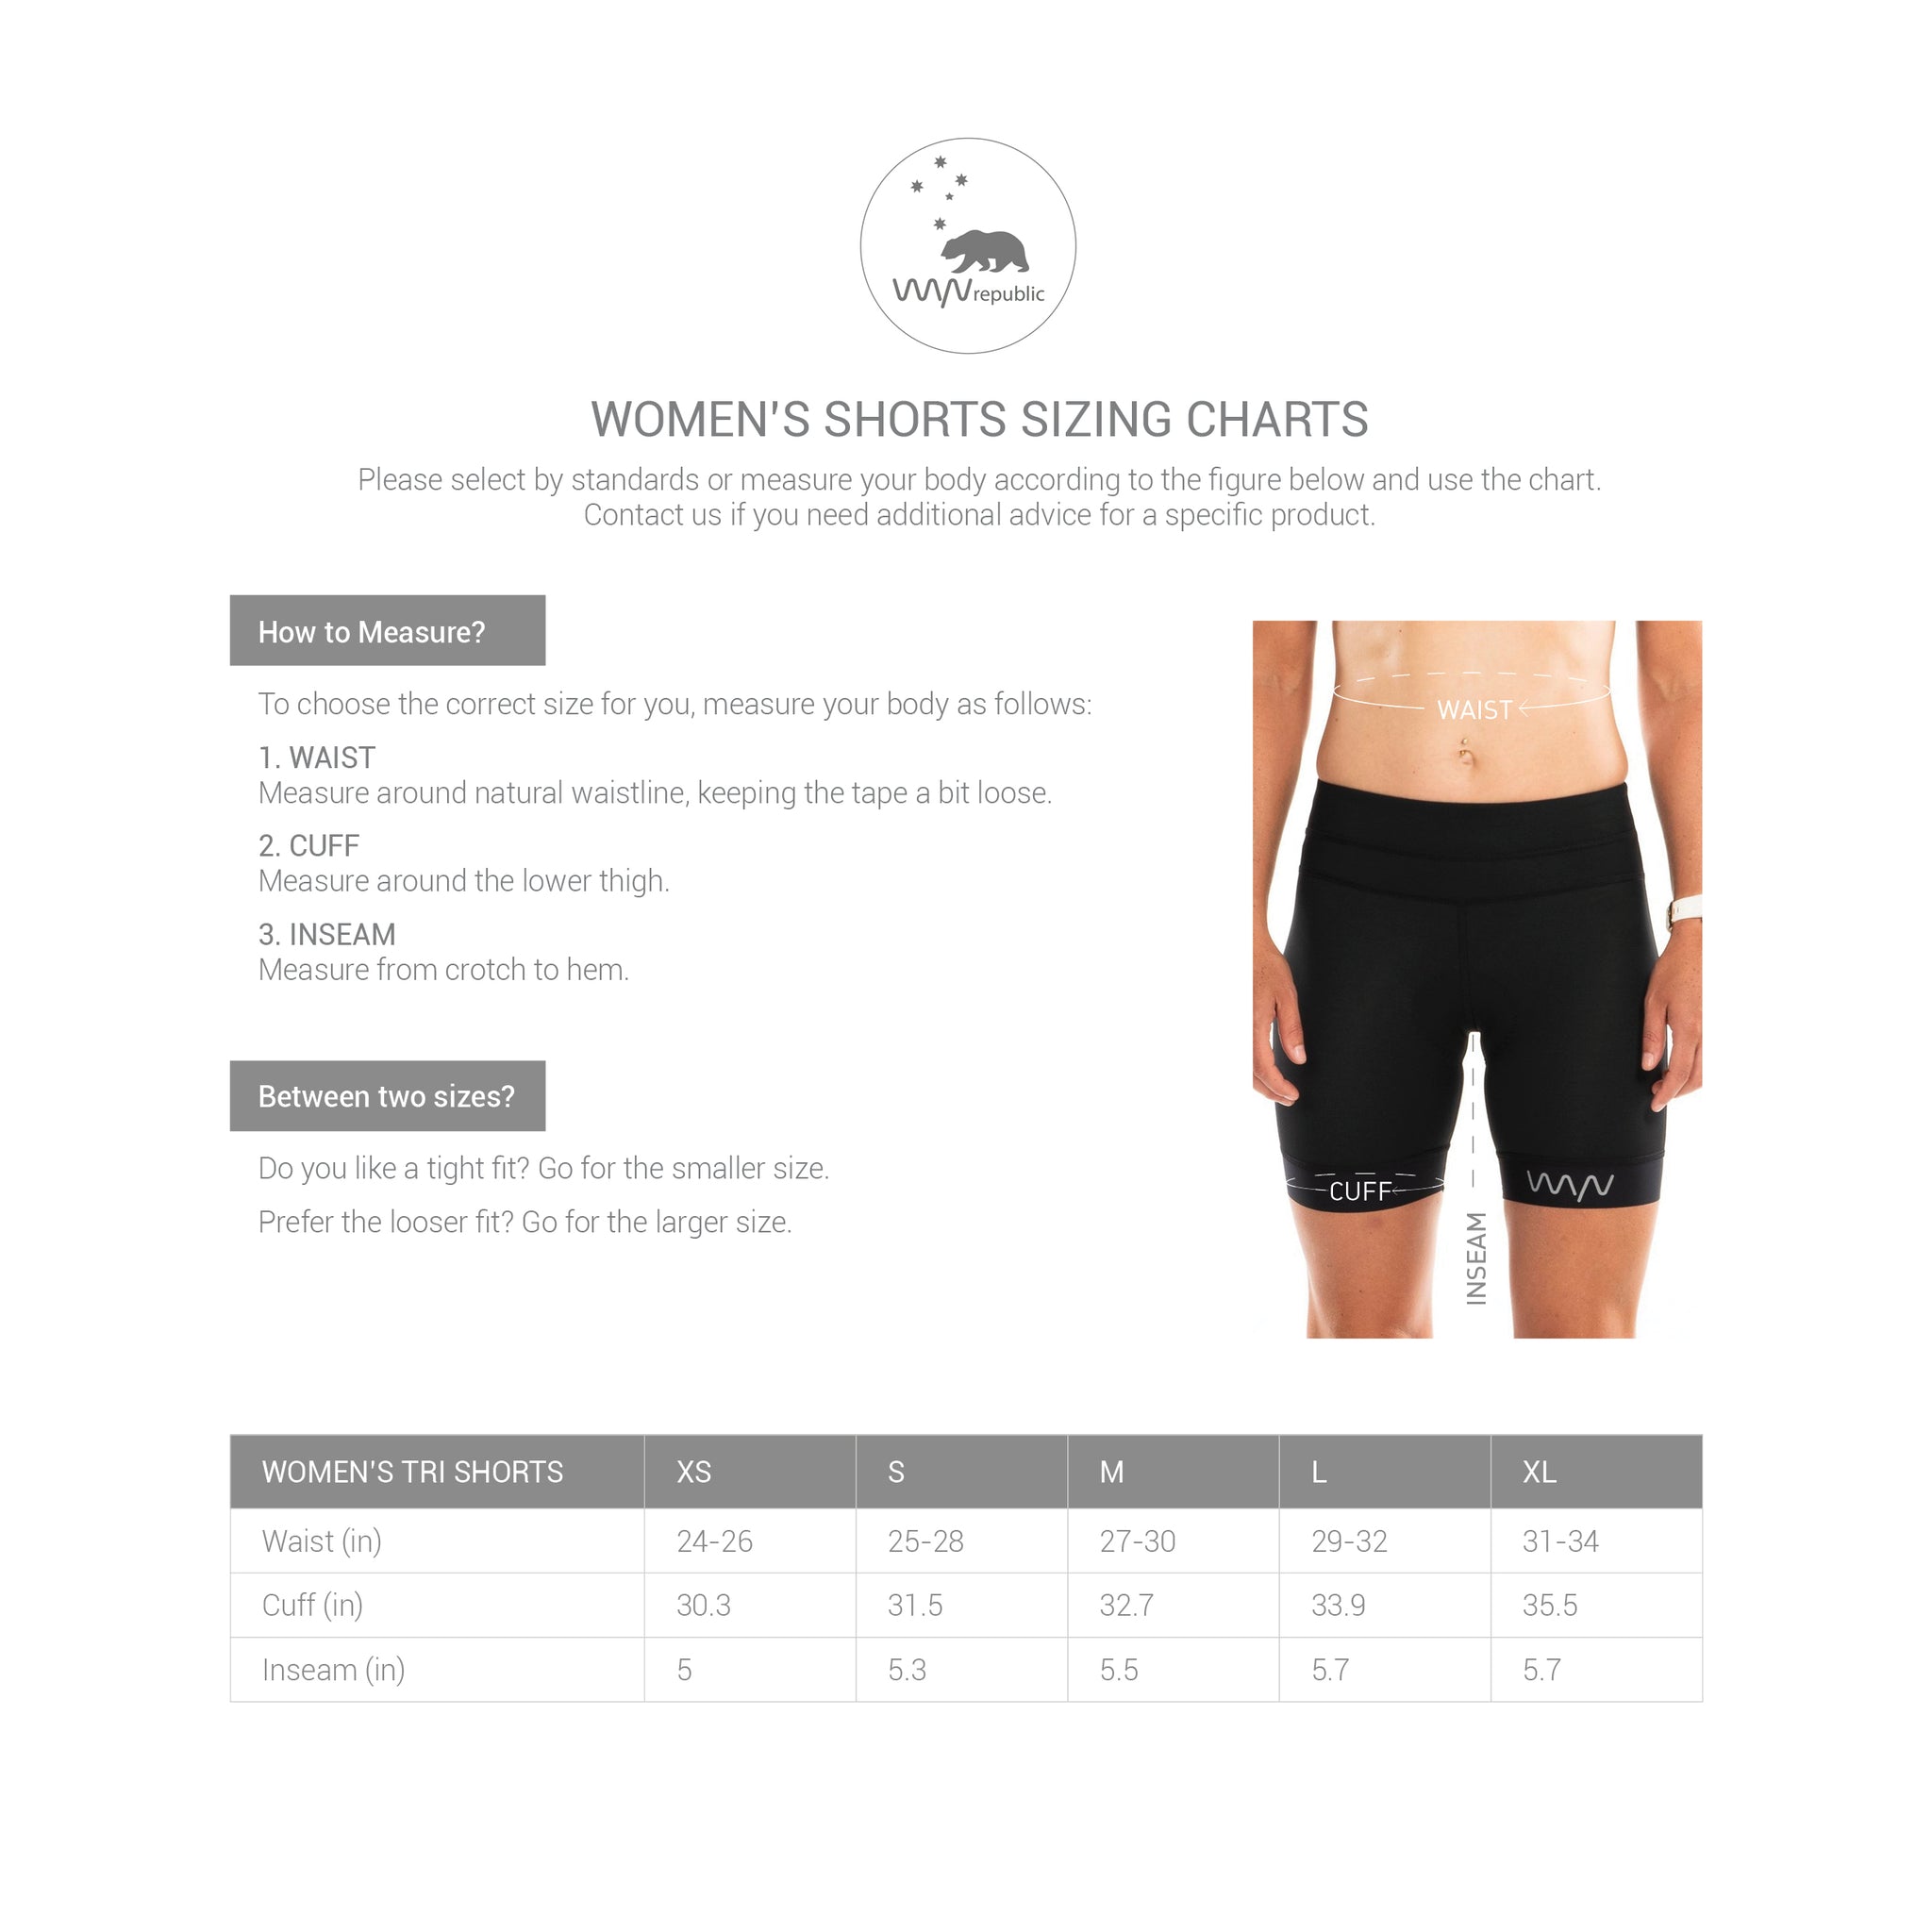 women's velocity tri shorts (7.5 inch) – WYN republic